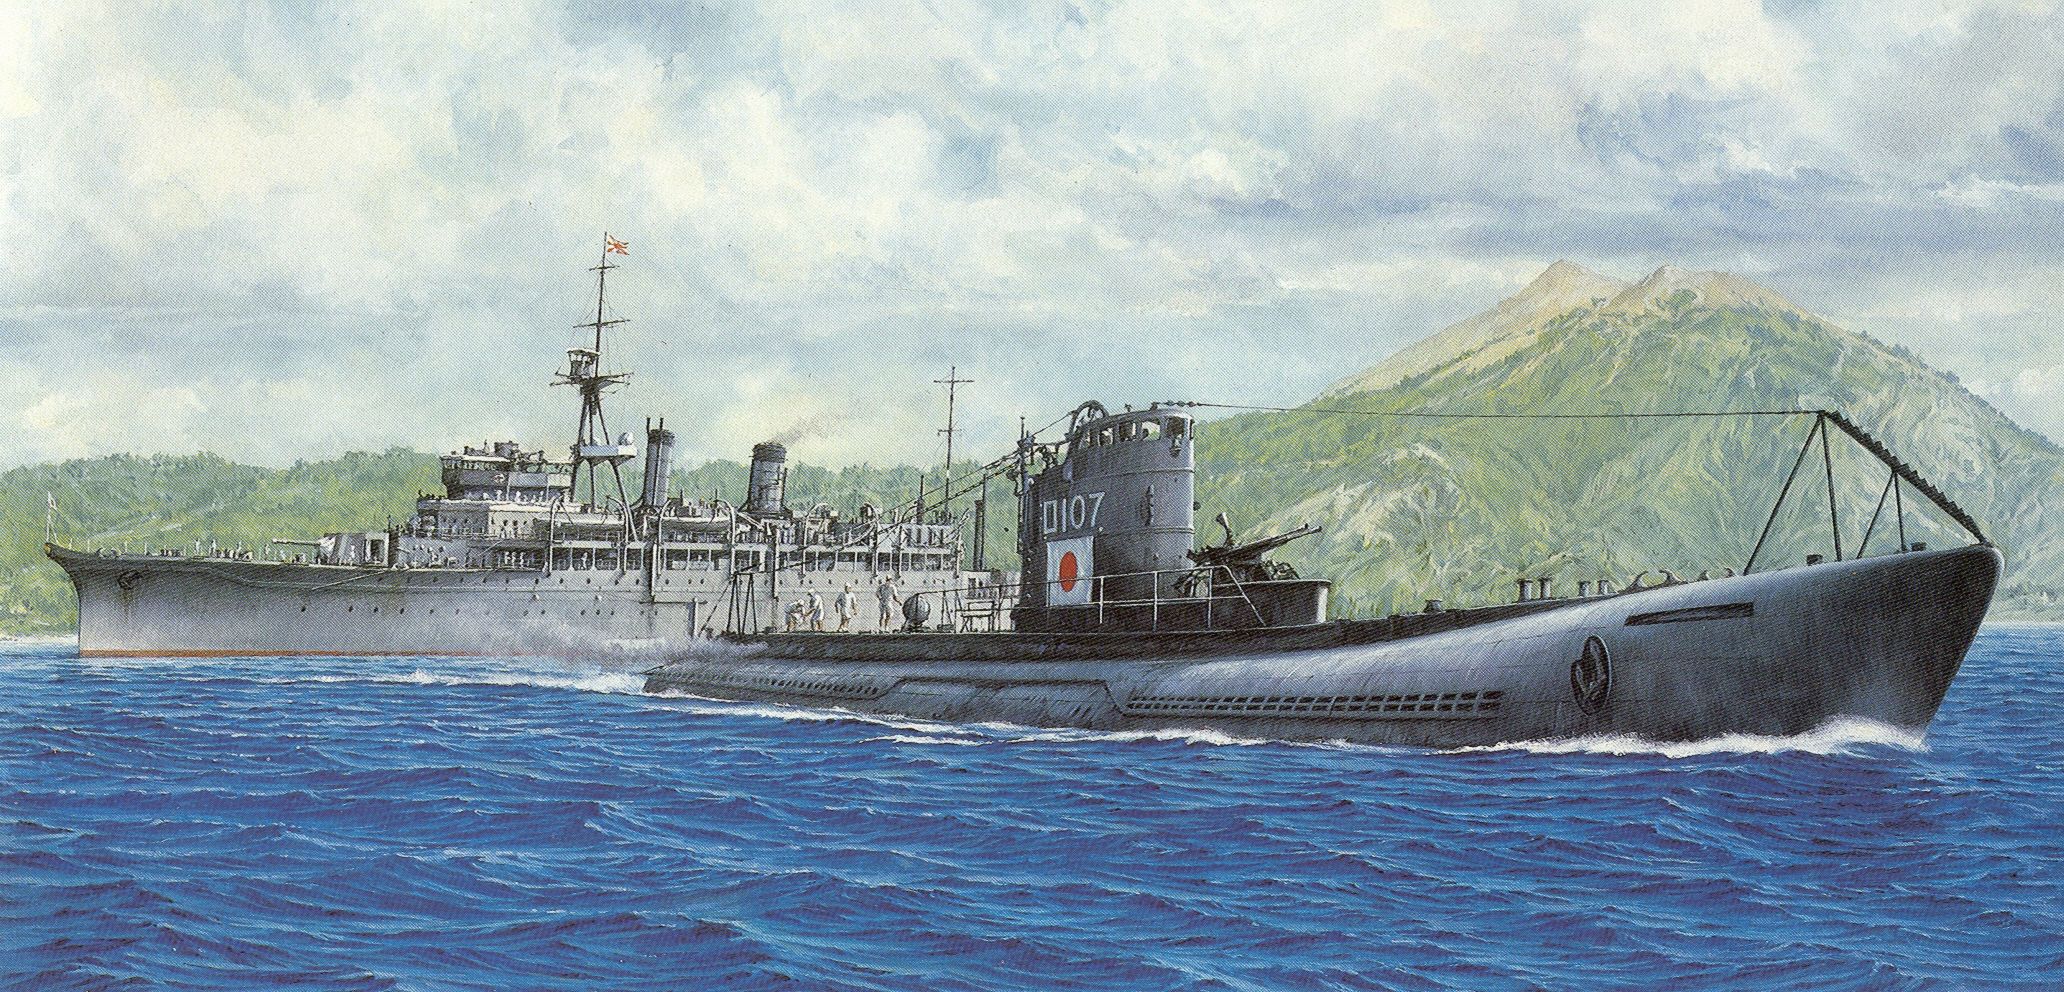 Мировой подводный флот. Японские подводные лодки ww2. Японские корабли 2 мировой войны. Подводные лодки Японии второй мировой войны 1939-1945. Японские подводные лодки второй мировой войны.